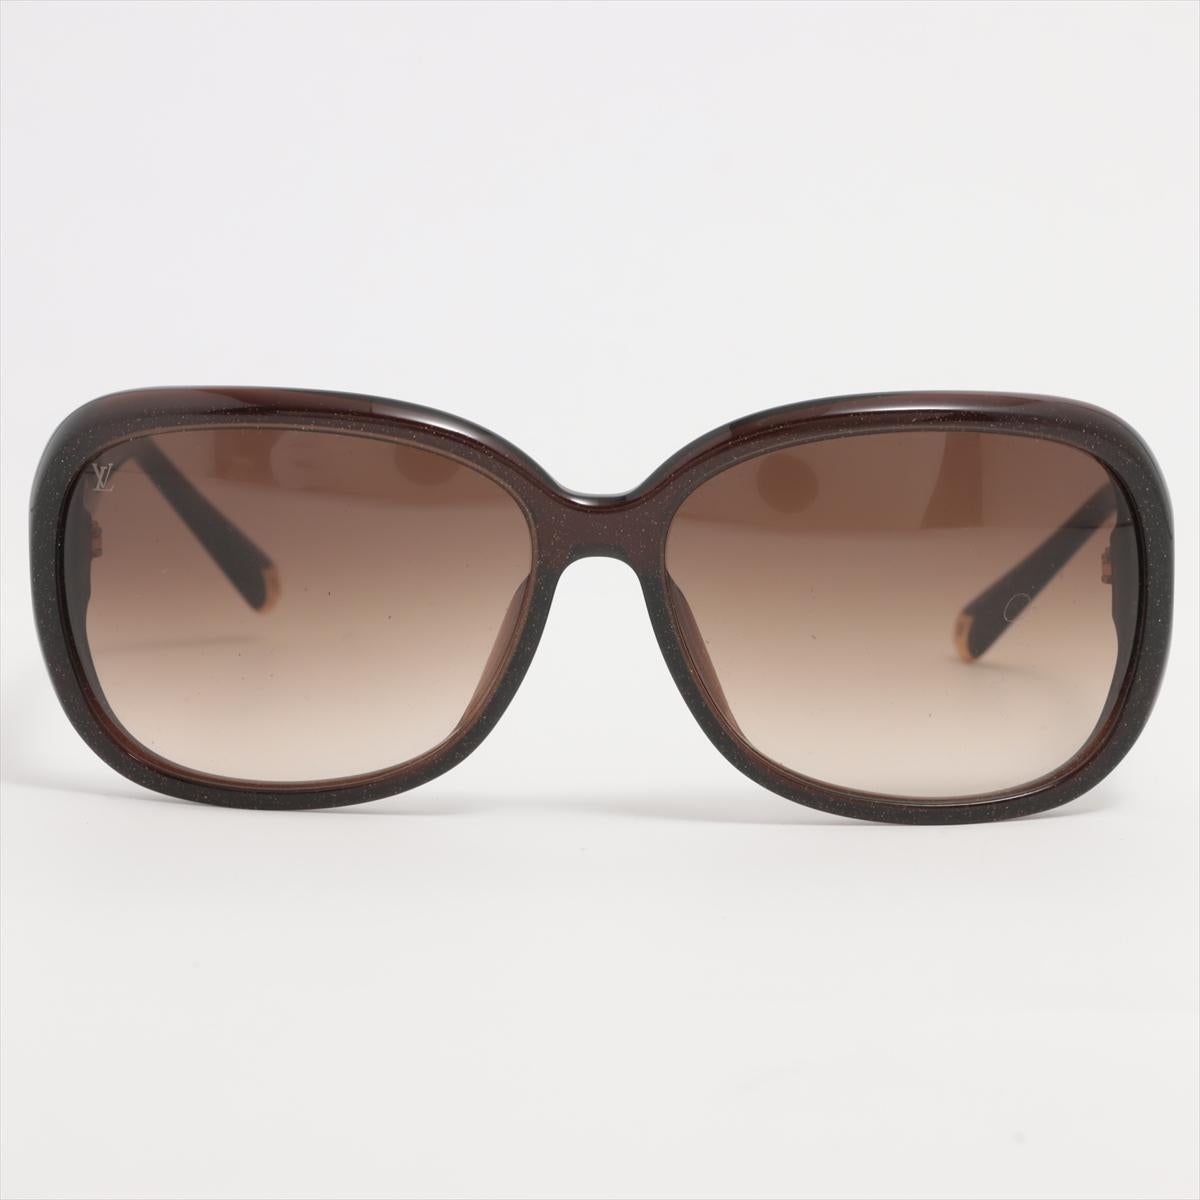 Gli occhiali da sole LV Obsession Round sono una nuova interpretazione del modello più venduto, reinventato con una finitura scintillante. Gli occhiali oversize sono caratterizzati da una montatura in acetato con effetto scintillante, impreziosita